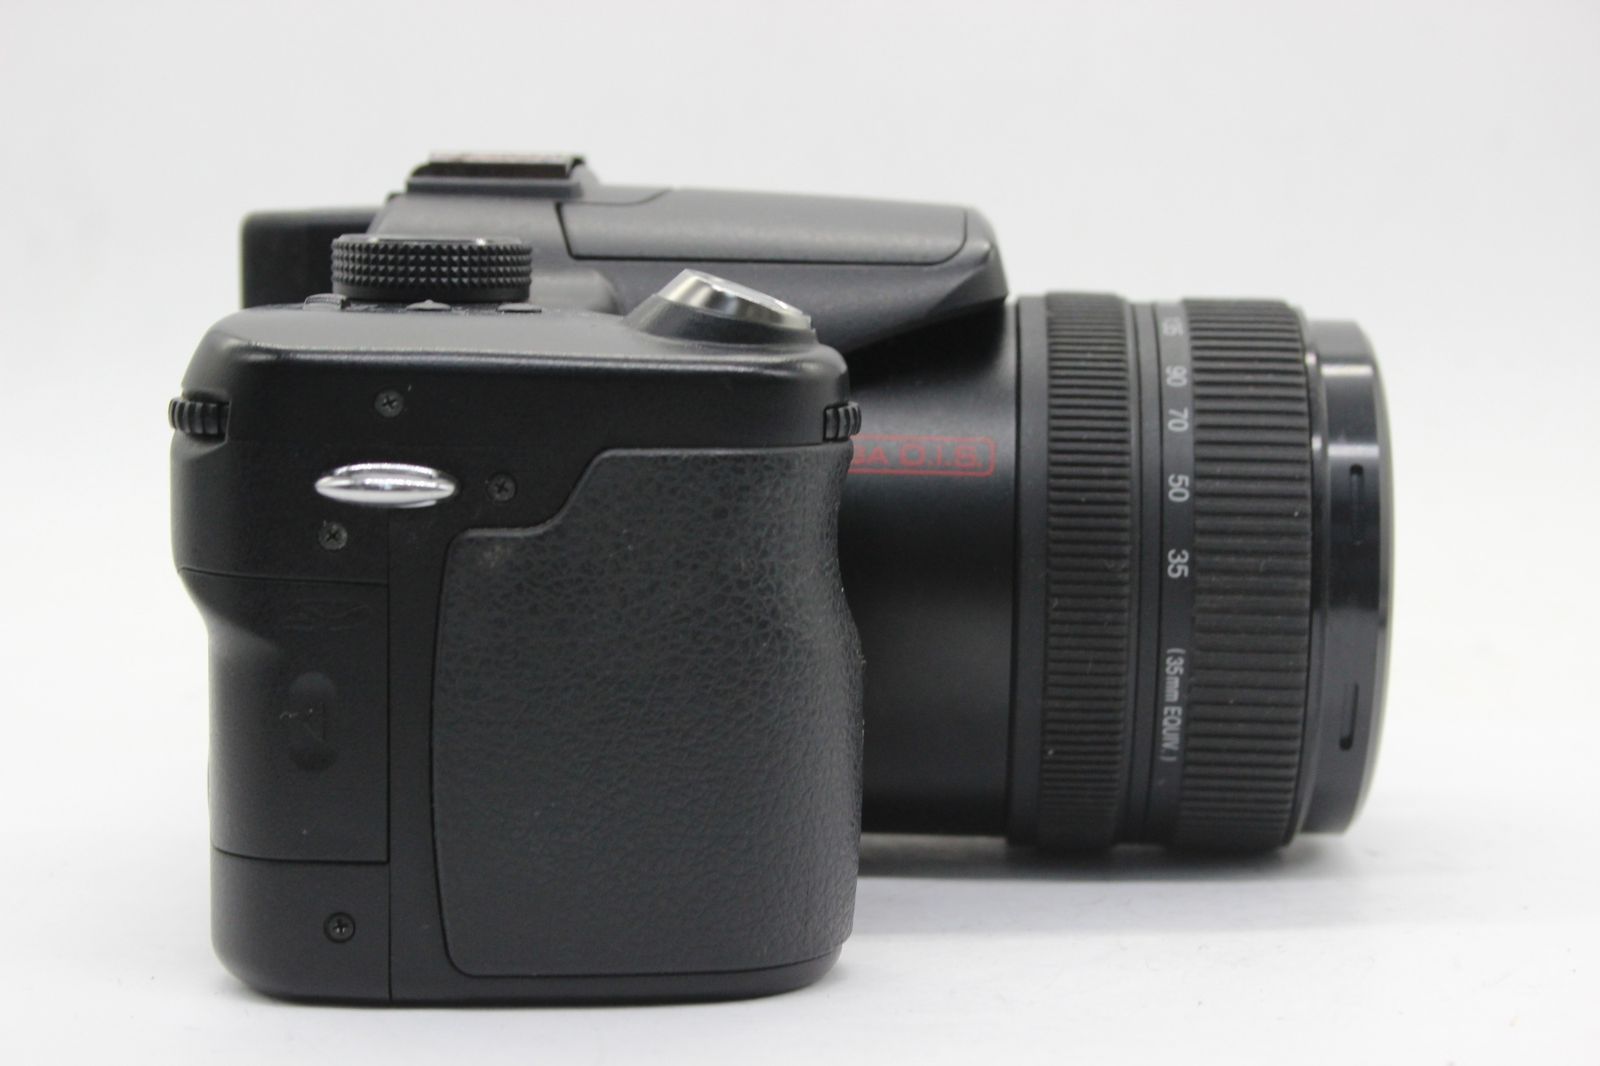 【返品保証】 パナソニック Panasonic LUMIX DMC-FZ30 12x バッテリー付き コンパクトデジタルカメラ s9134